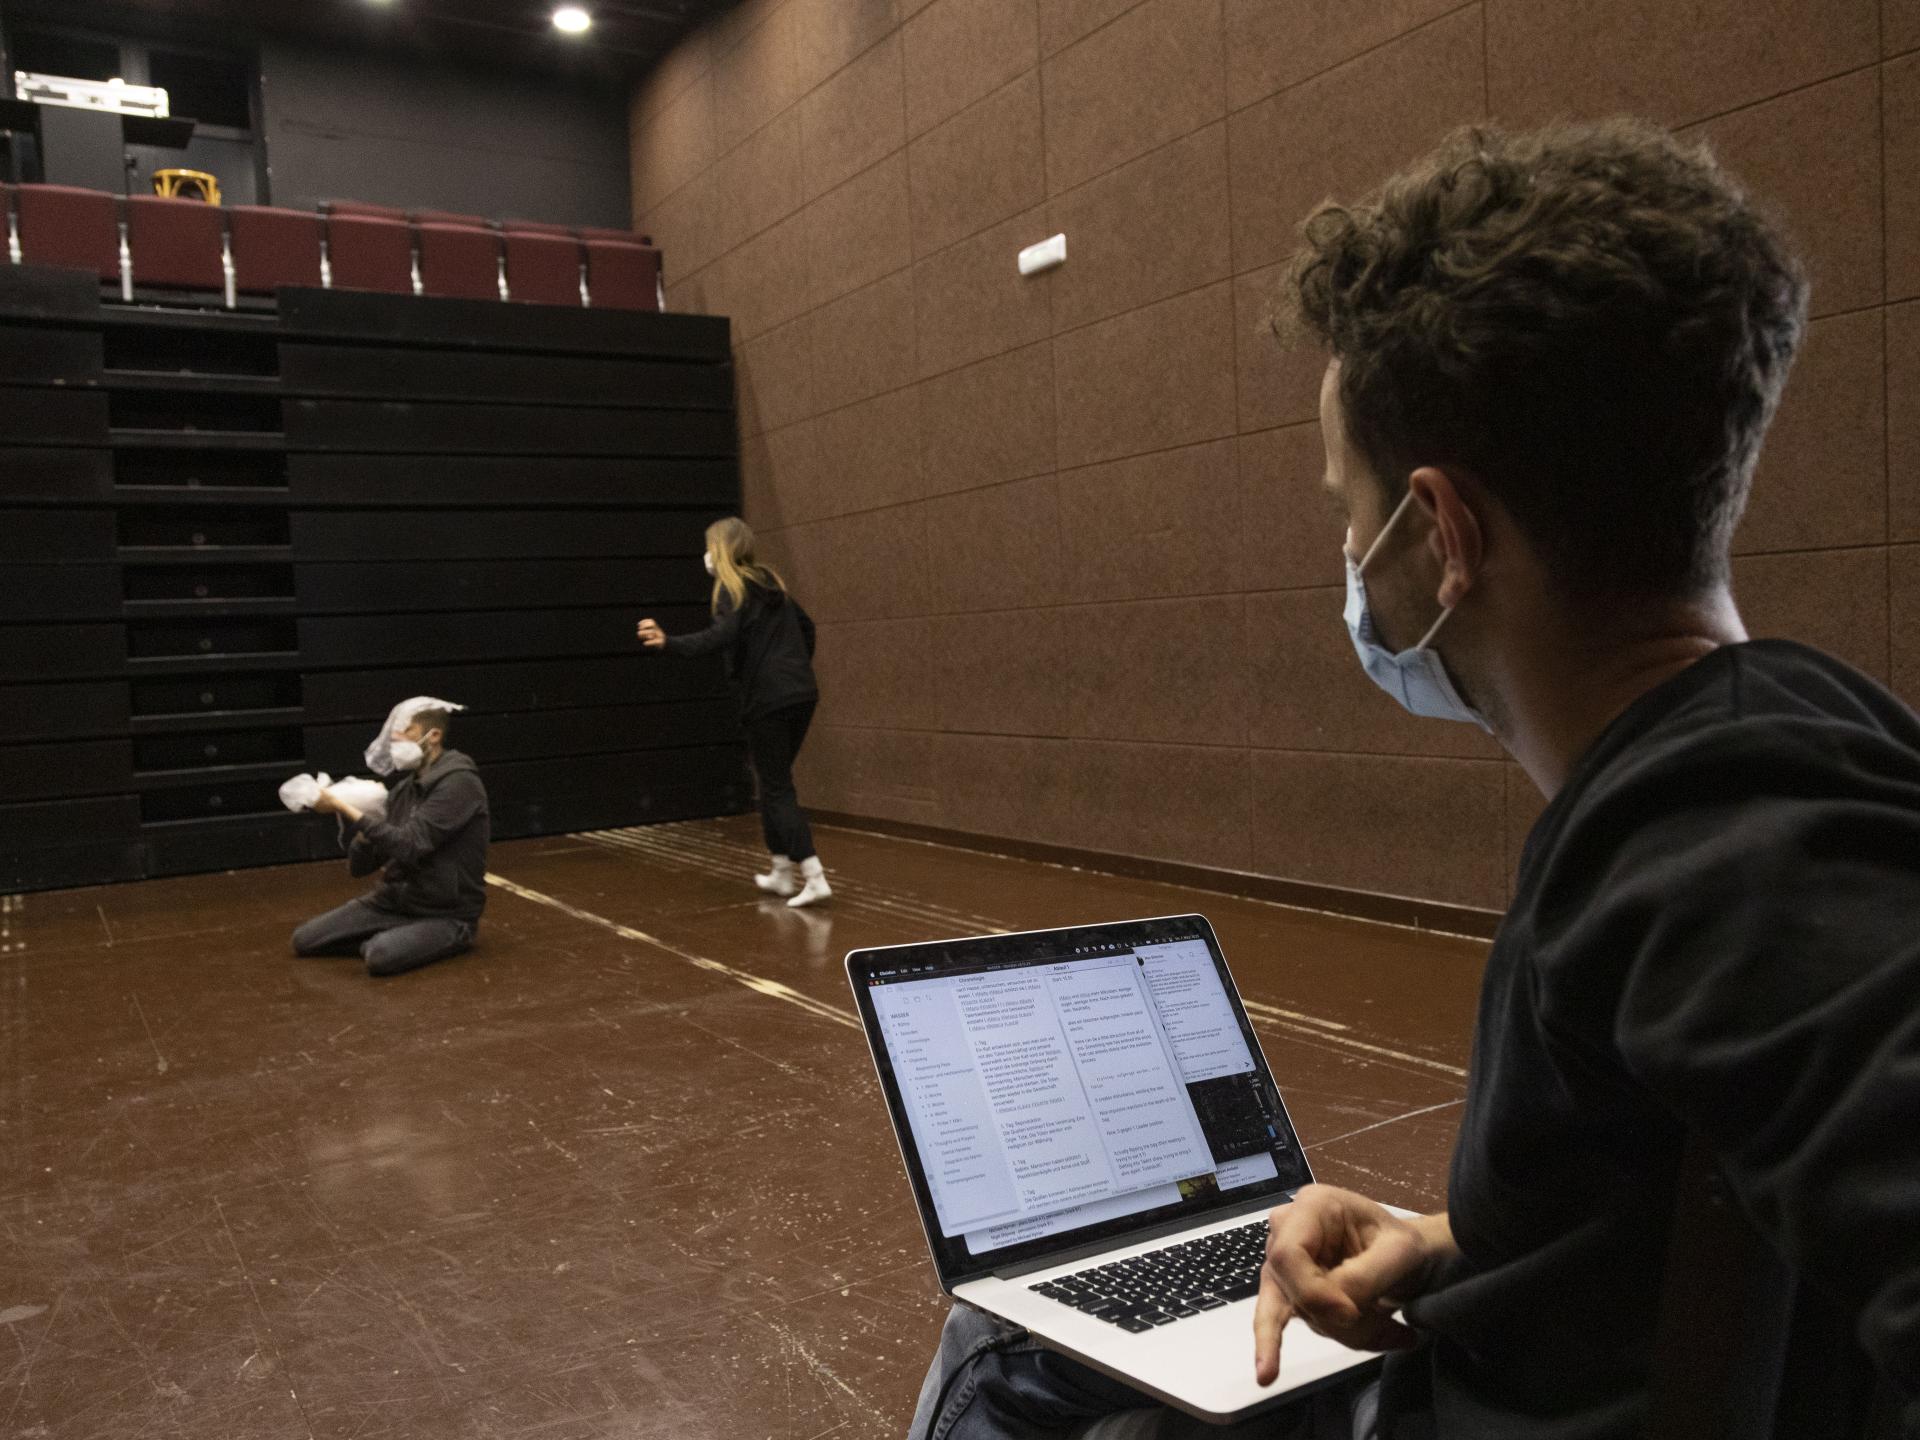 Mann sitzt mit Laptop auf den Knien, darauf sind Texte zu sehen, er beobachtet zwei Spieler*innen im Raum bei Proben.